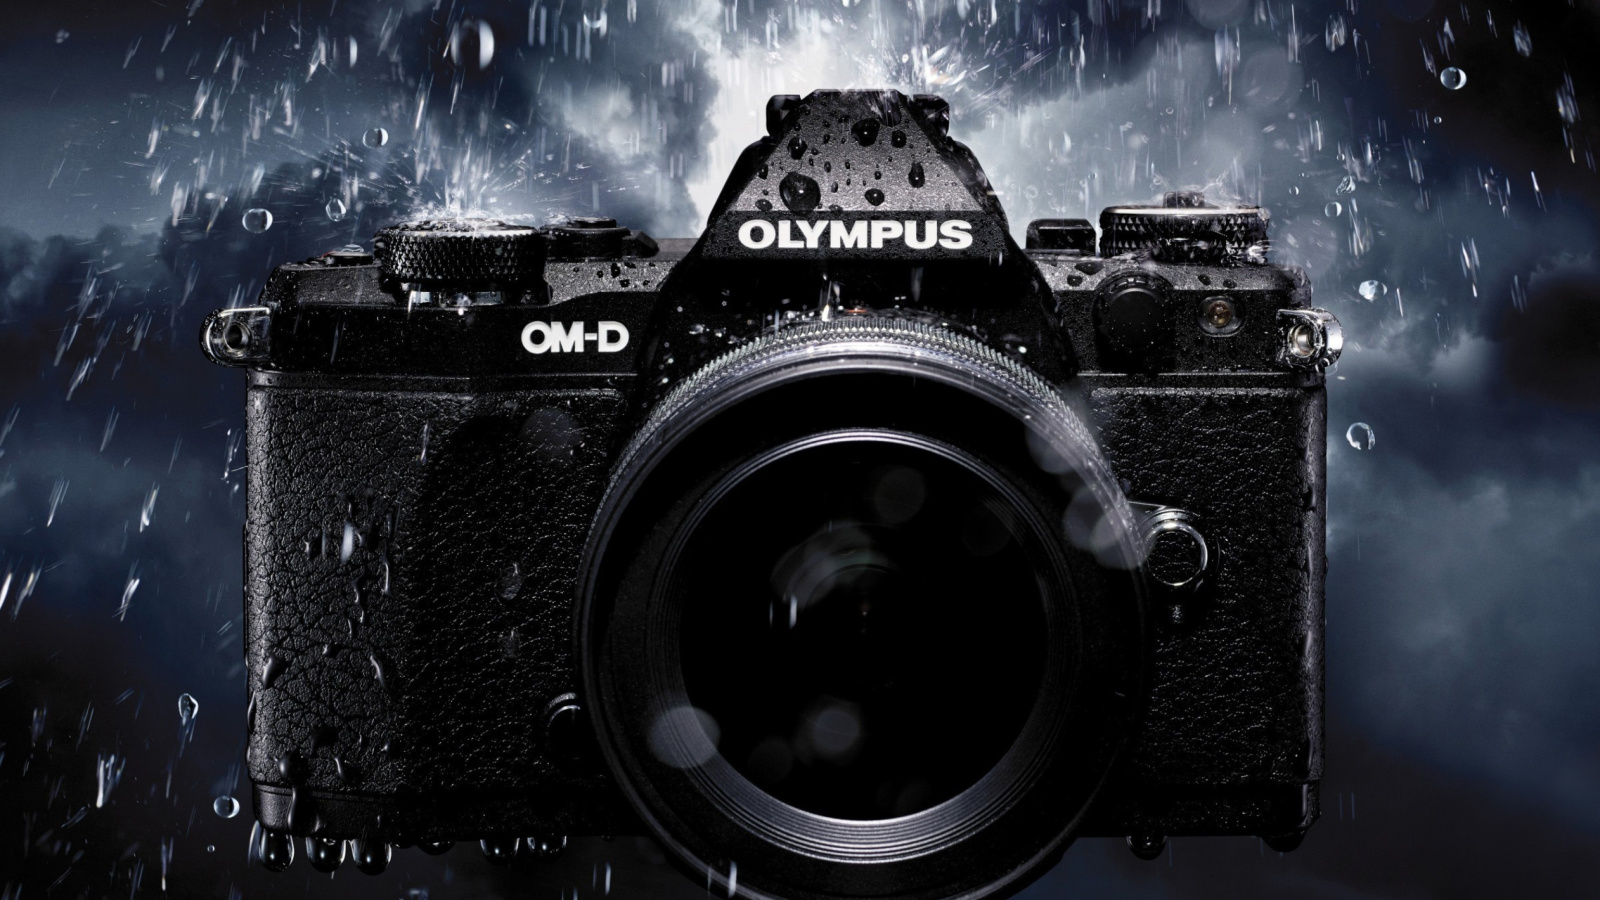 Fondo de pantalla Olympus Om D 1600x900